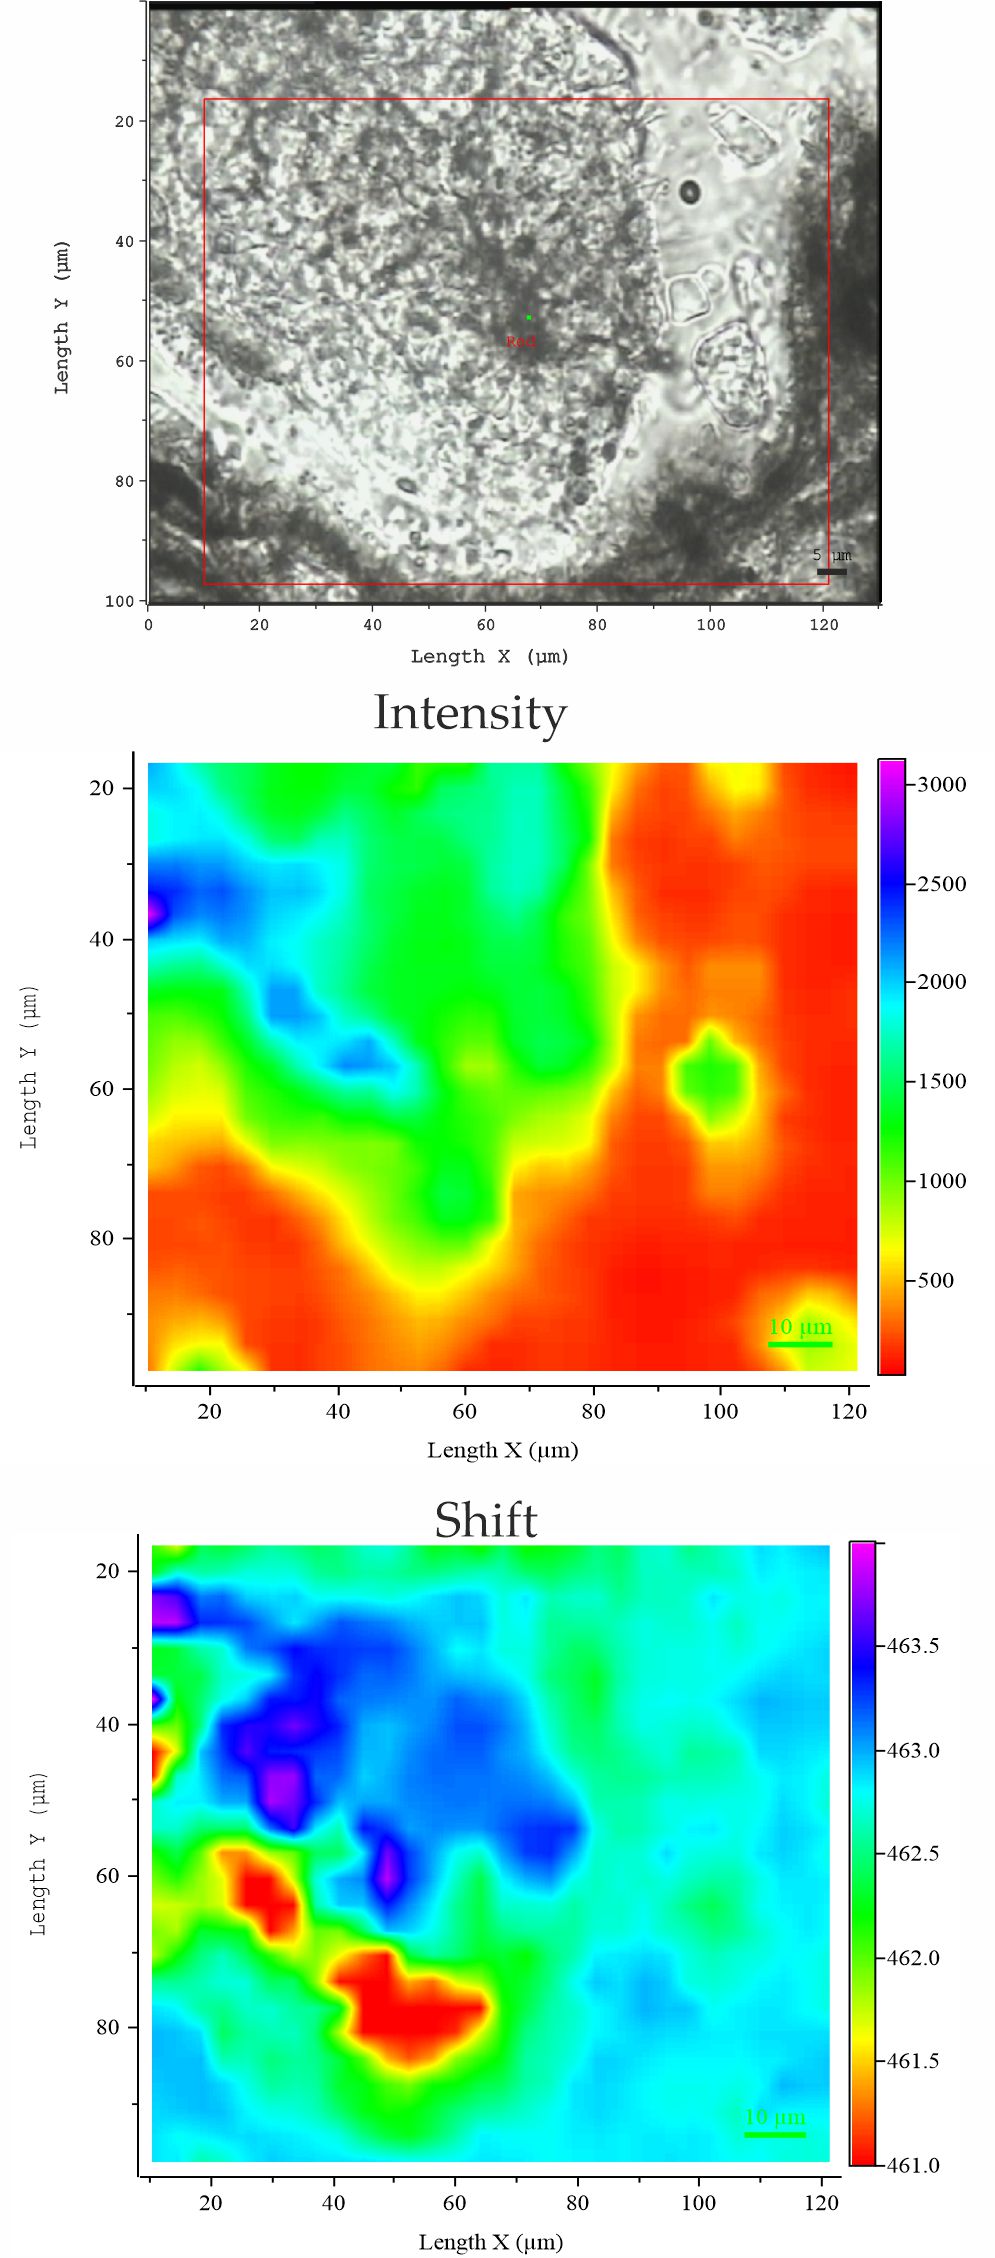 Quarzkorn zeigt Intensitäts- sowie Ramanverschiebung (shift) des Hauptpeaks bei 464 cm-1 vom Kern zum Randbereich. ©Kurt Krenn / Universität Graz